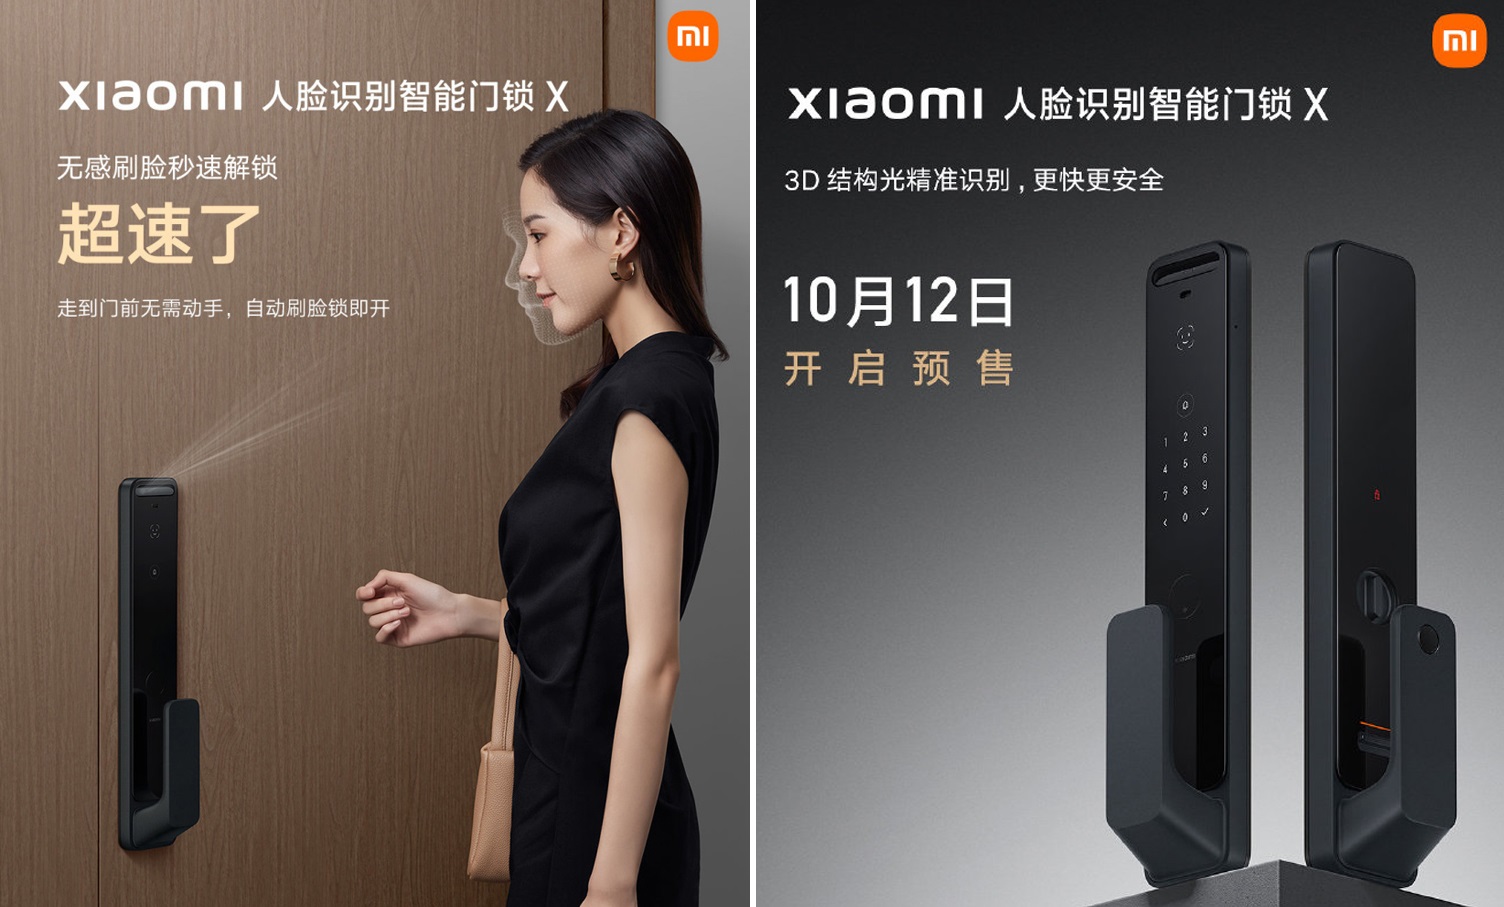 Xiaomi svela la serratura della porta con NFC, schermo AMOLED e riconoscimento facciale 3D